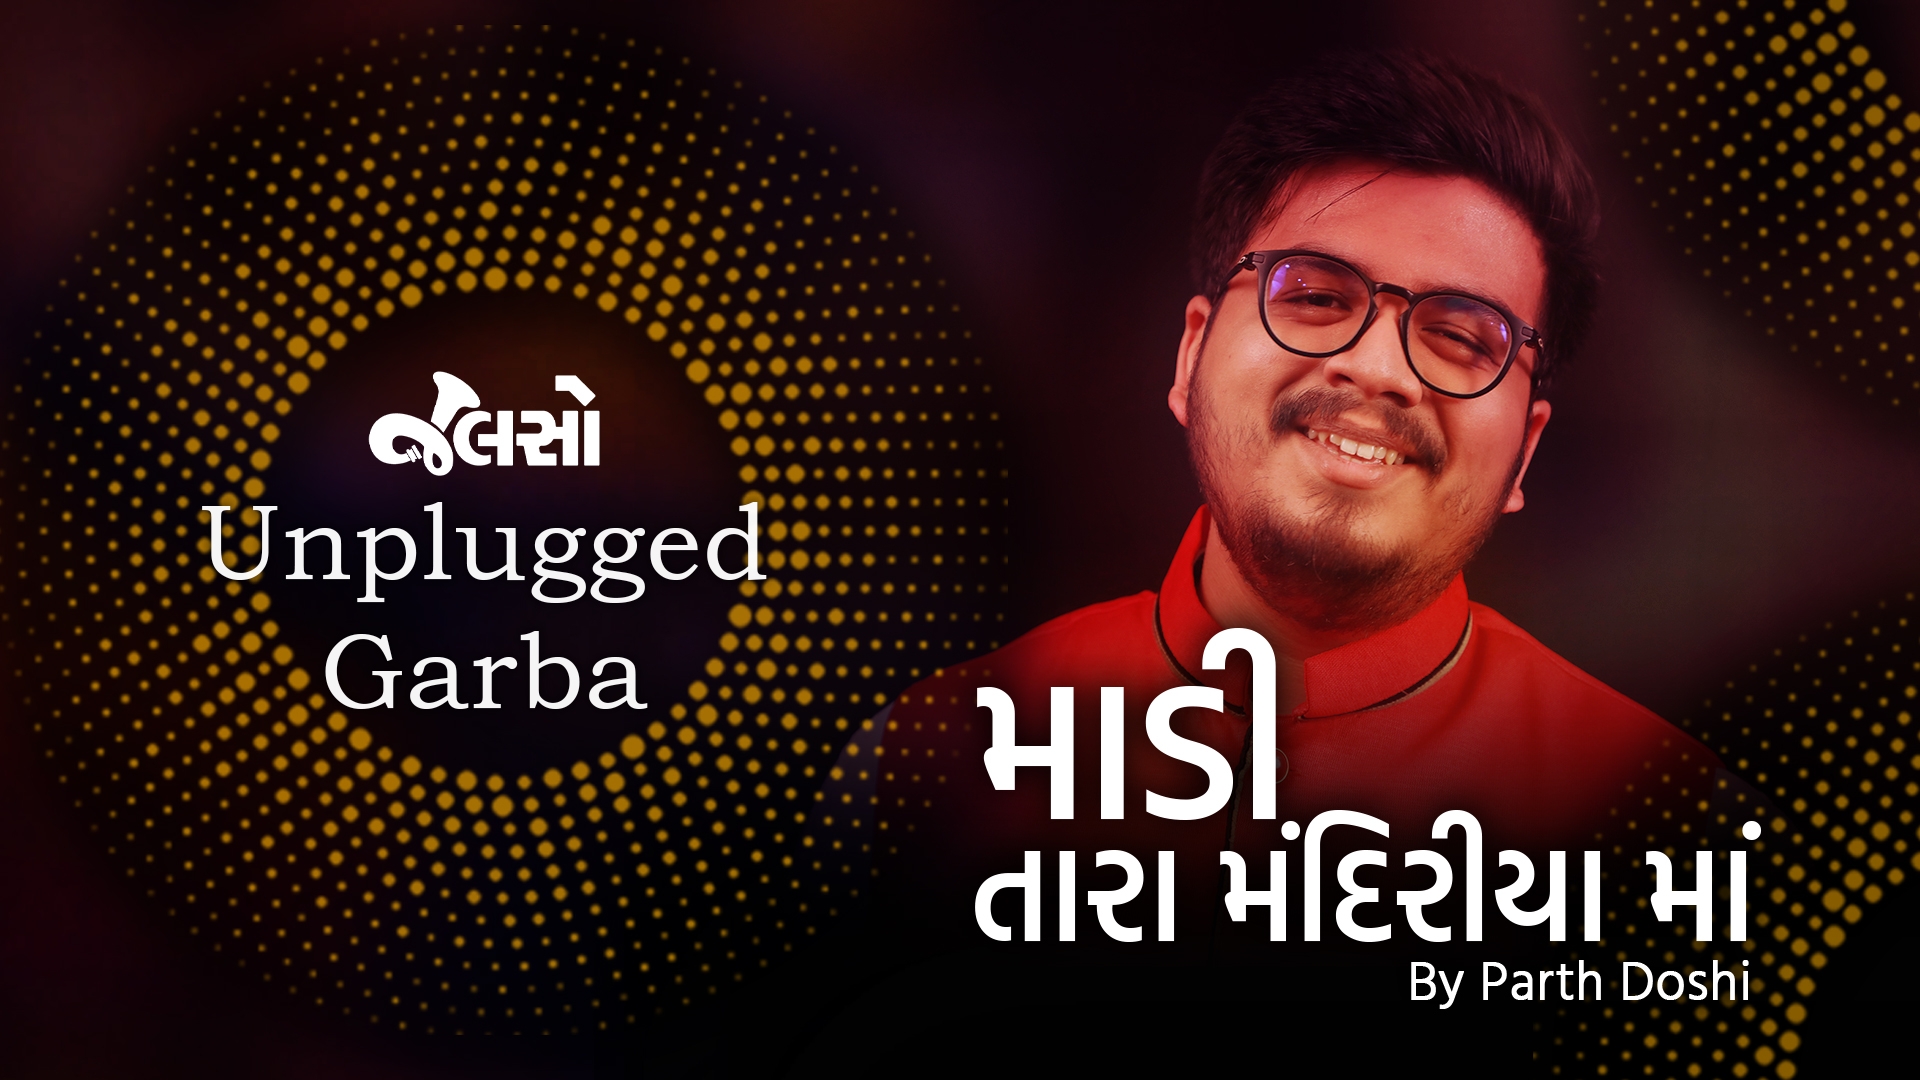 માડી તારા મંદિરીયામાં | Maadi Tara Mandiriya Ma | Parth Doshi | Jalso Unplugged Garba